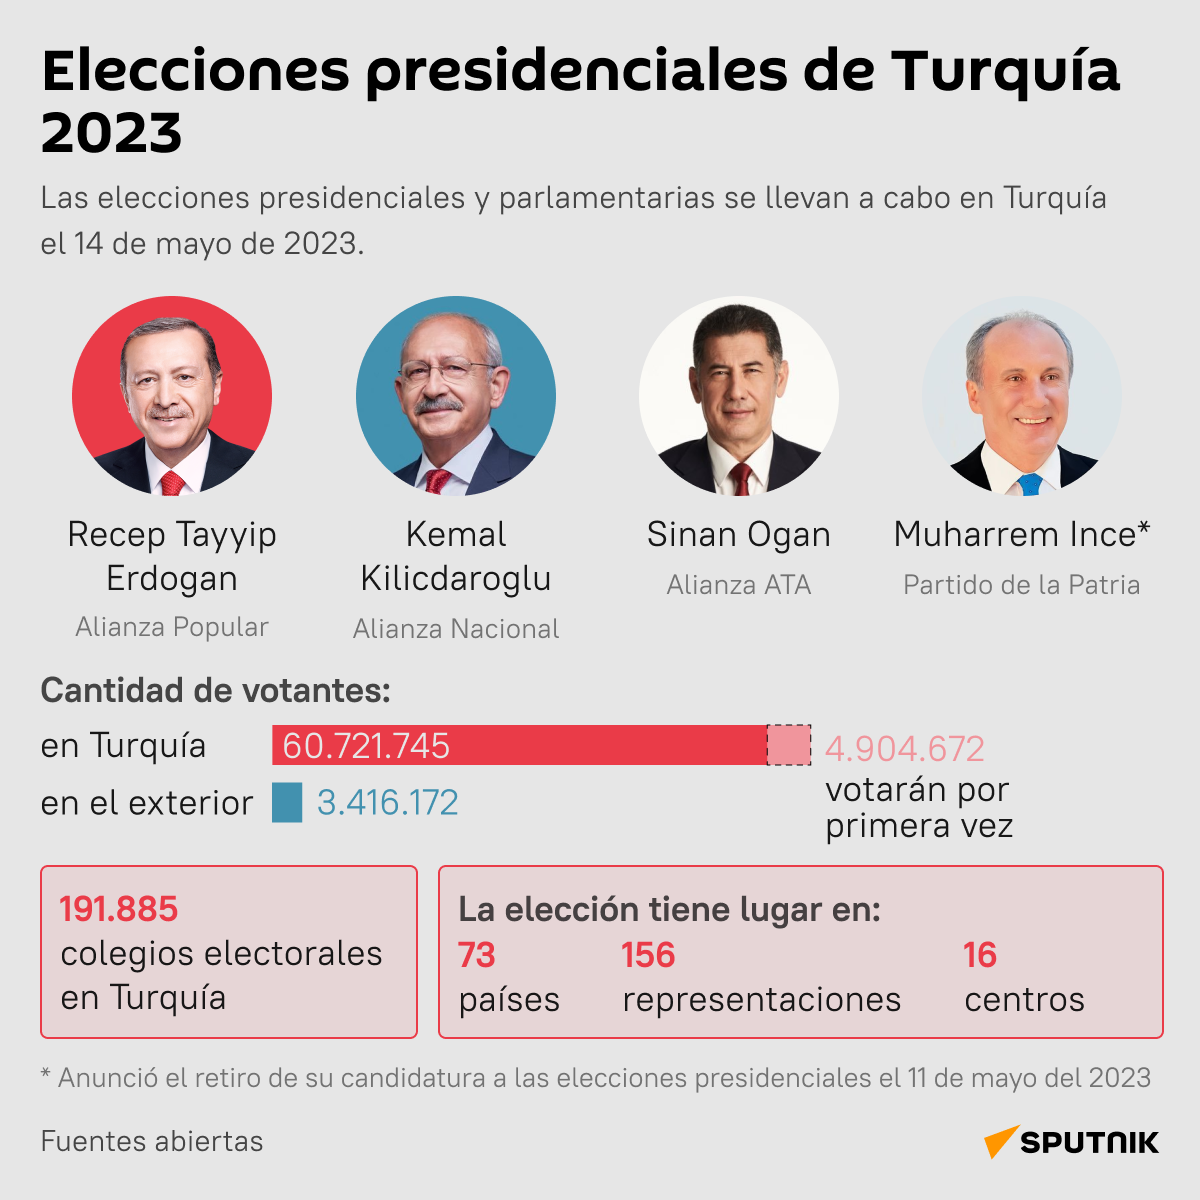 Las elecciones presidenciales en Turquía 2023 - Sputnik Mundo